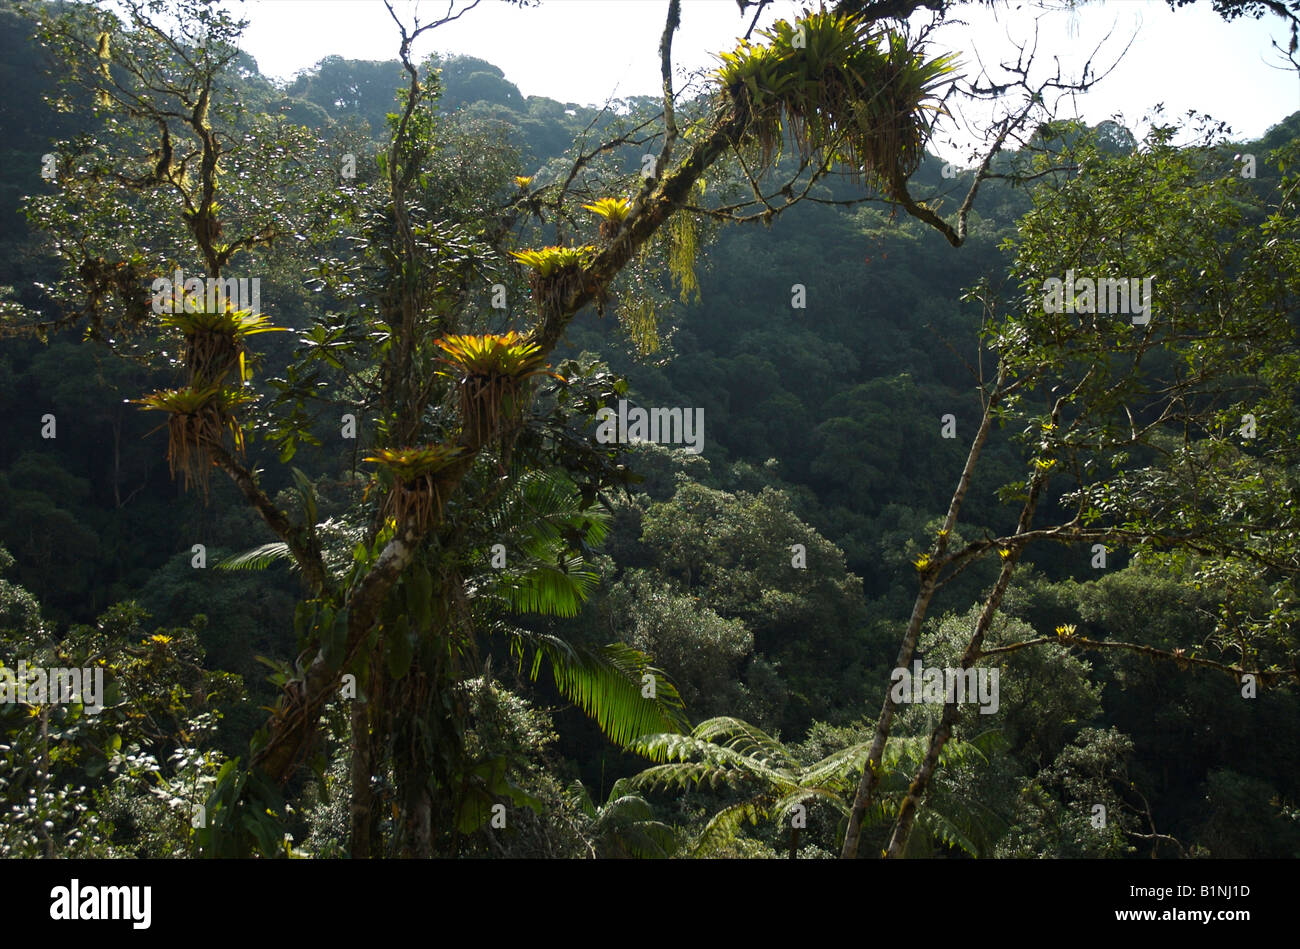 La selva tropical del Atlántico brasileño, un hábitat amenazado en todo el mundo. Foto de stock